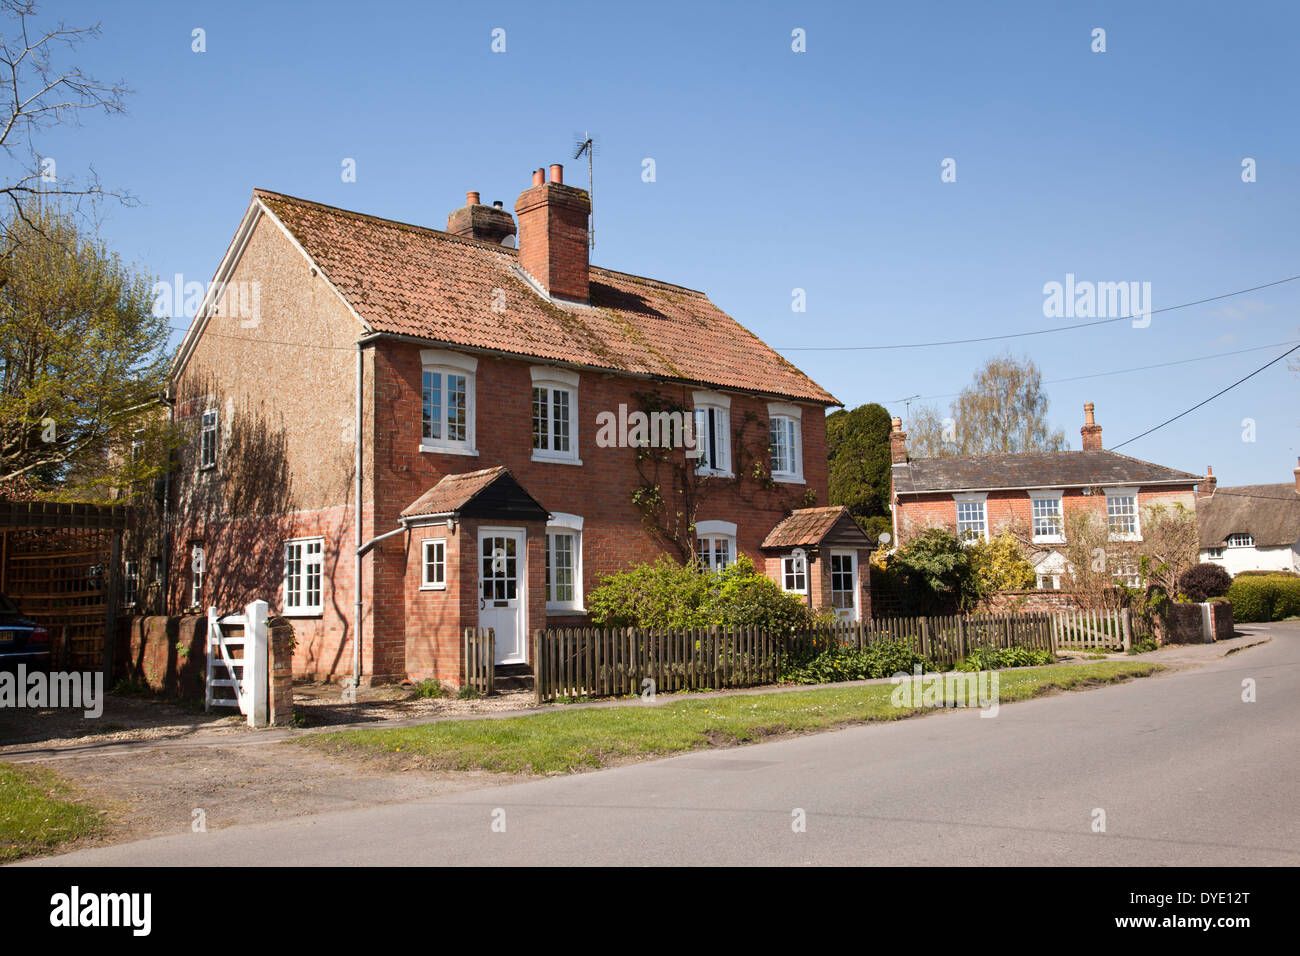 Traditionelle rote Backsteinhäuser im Dorf Urchfont, Wiltshire, England, Großbritannien Stockfoto